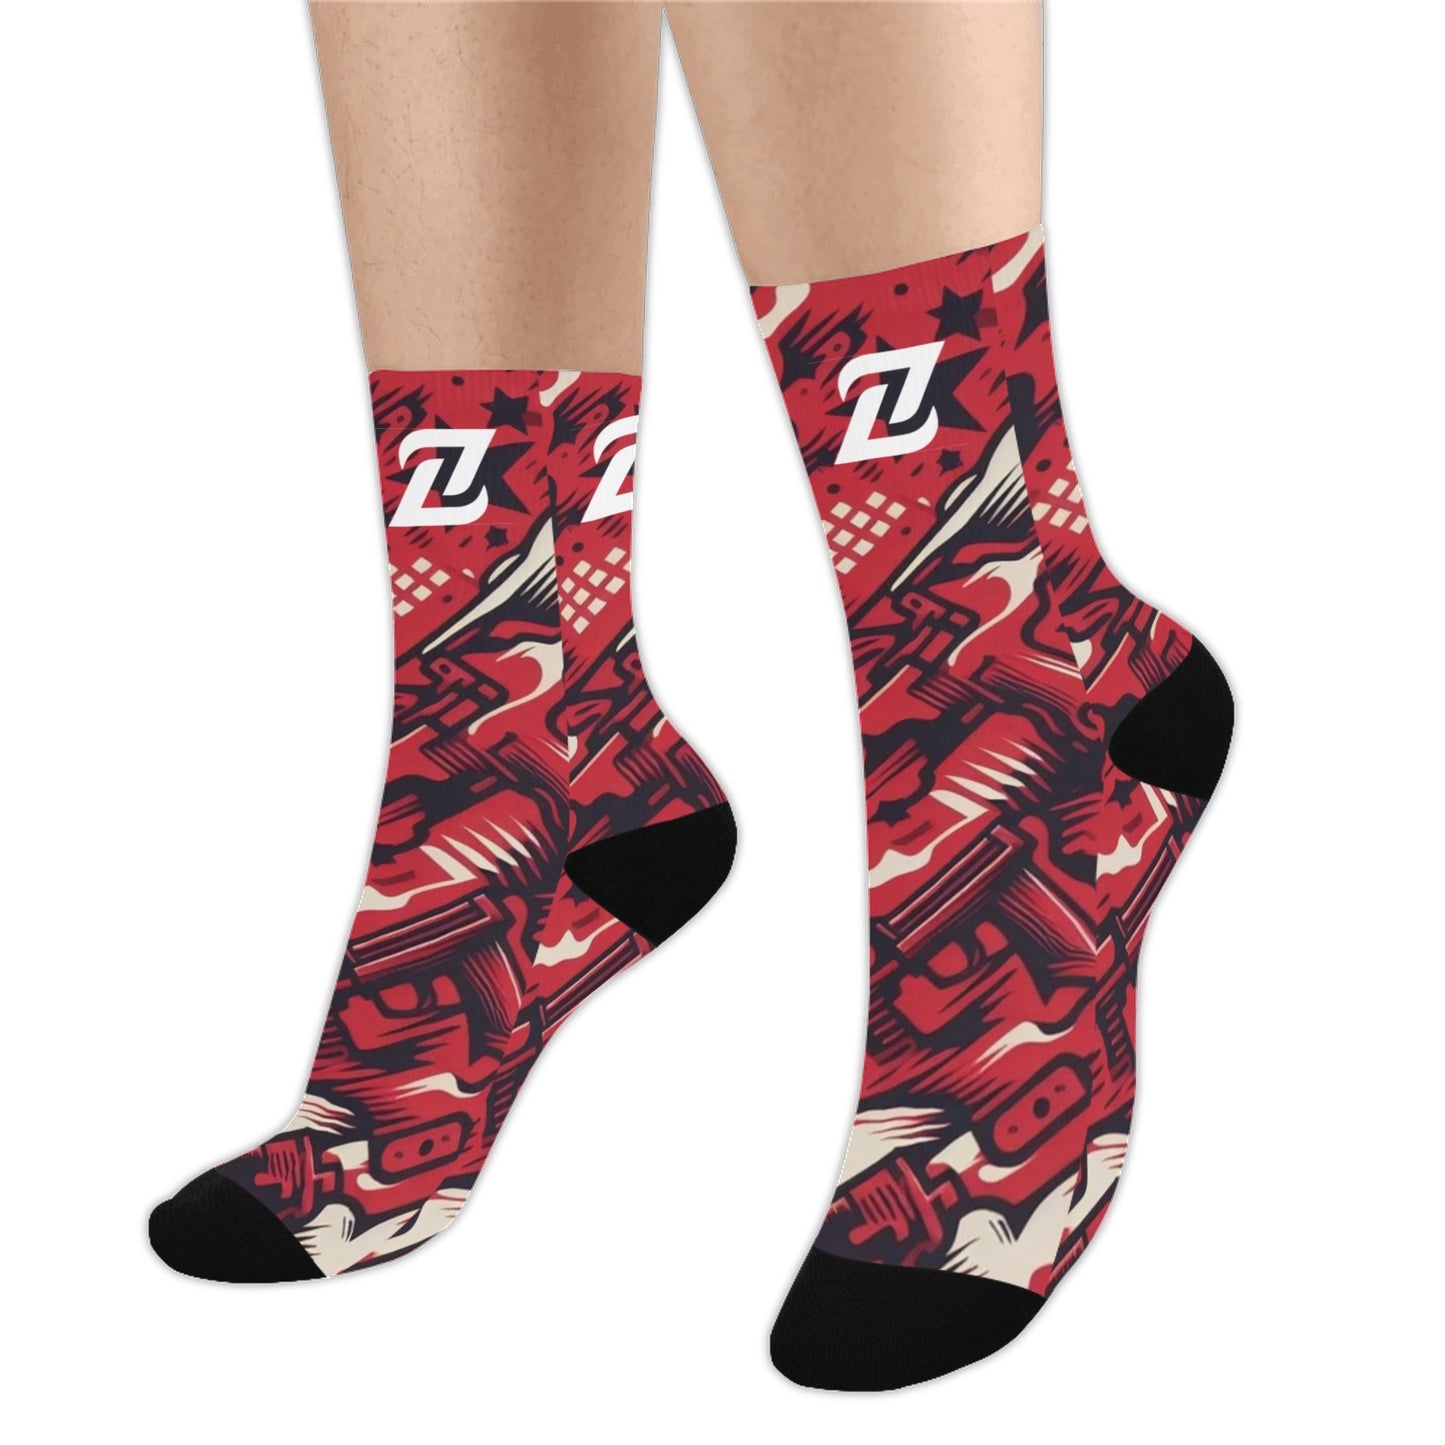 Zen Socks - Red Camo